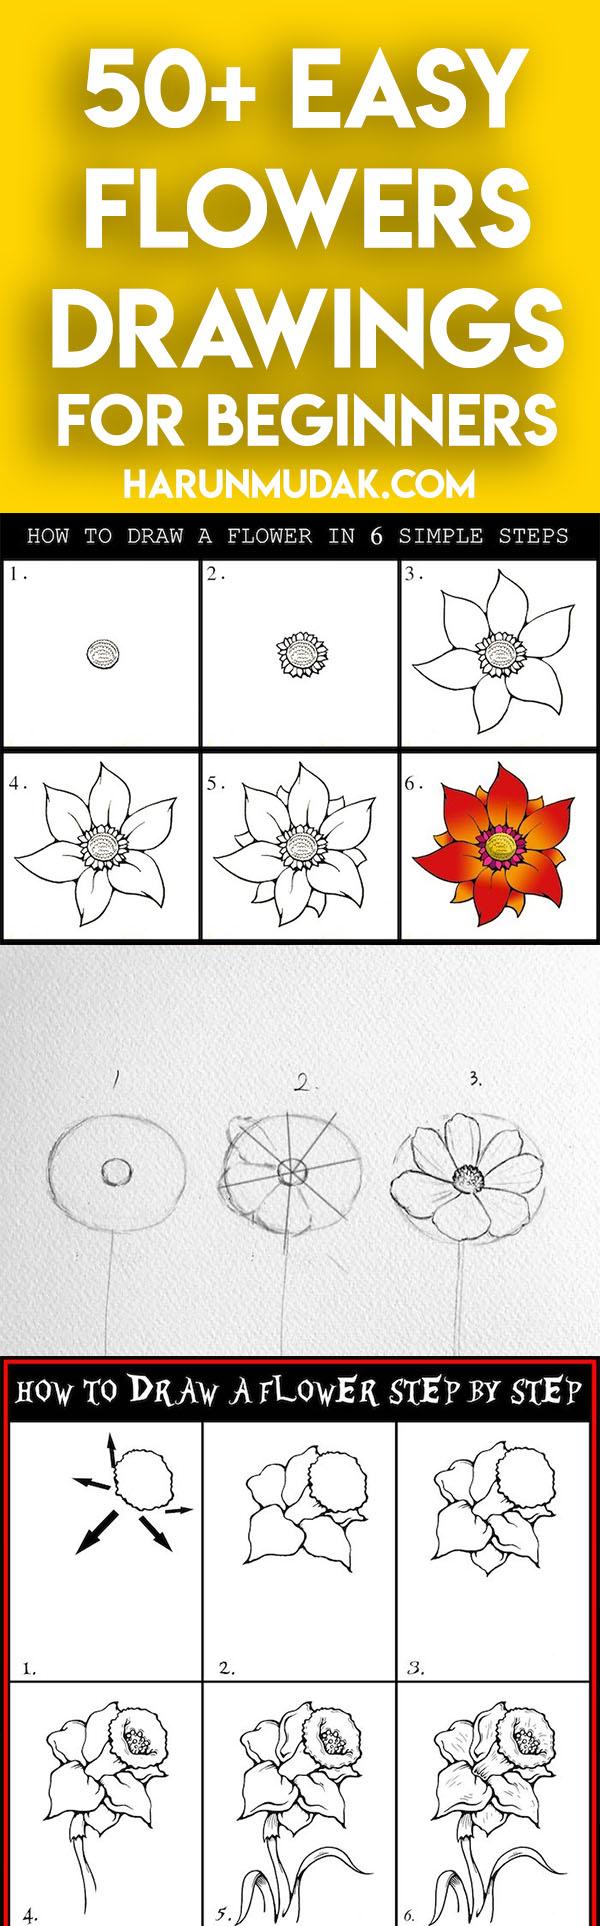 Roses in Bloom Sketch Best Temporary Tattoos - Etsy Norway